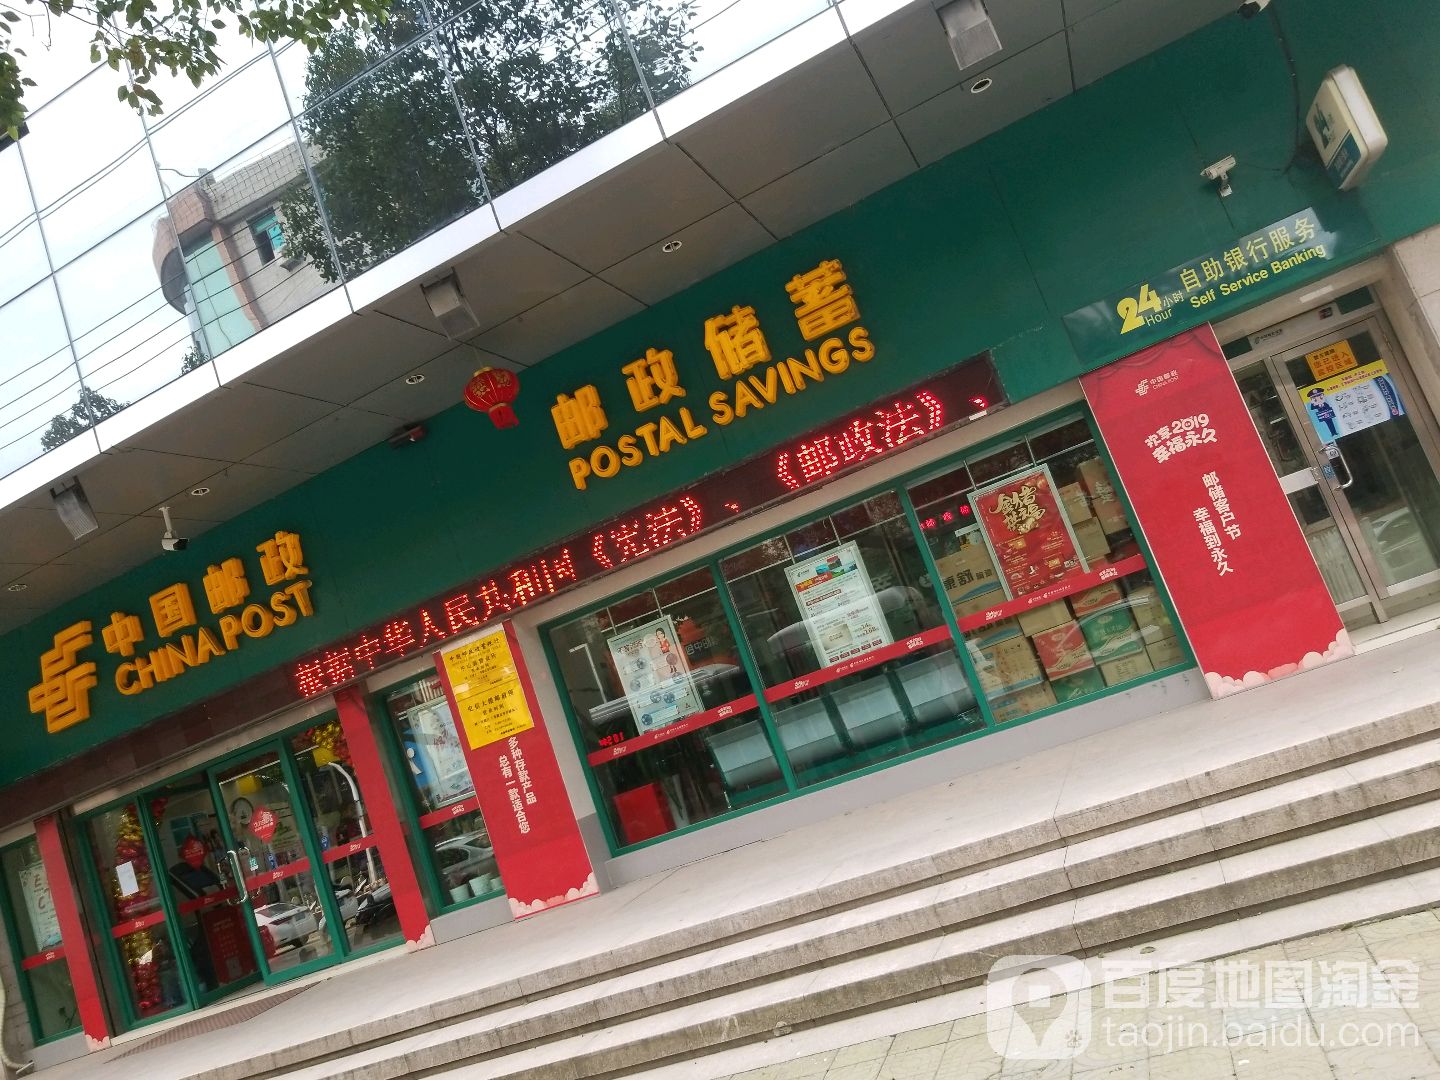 中國郵政儲蓄銀行24小時自助銀行(氣象北路)